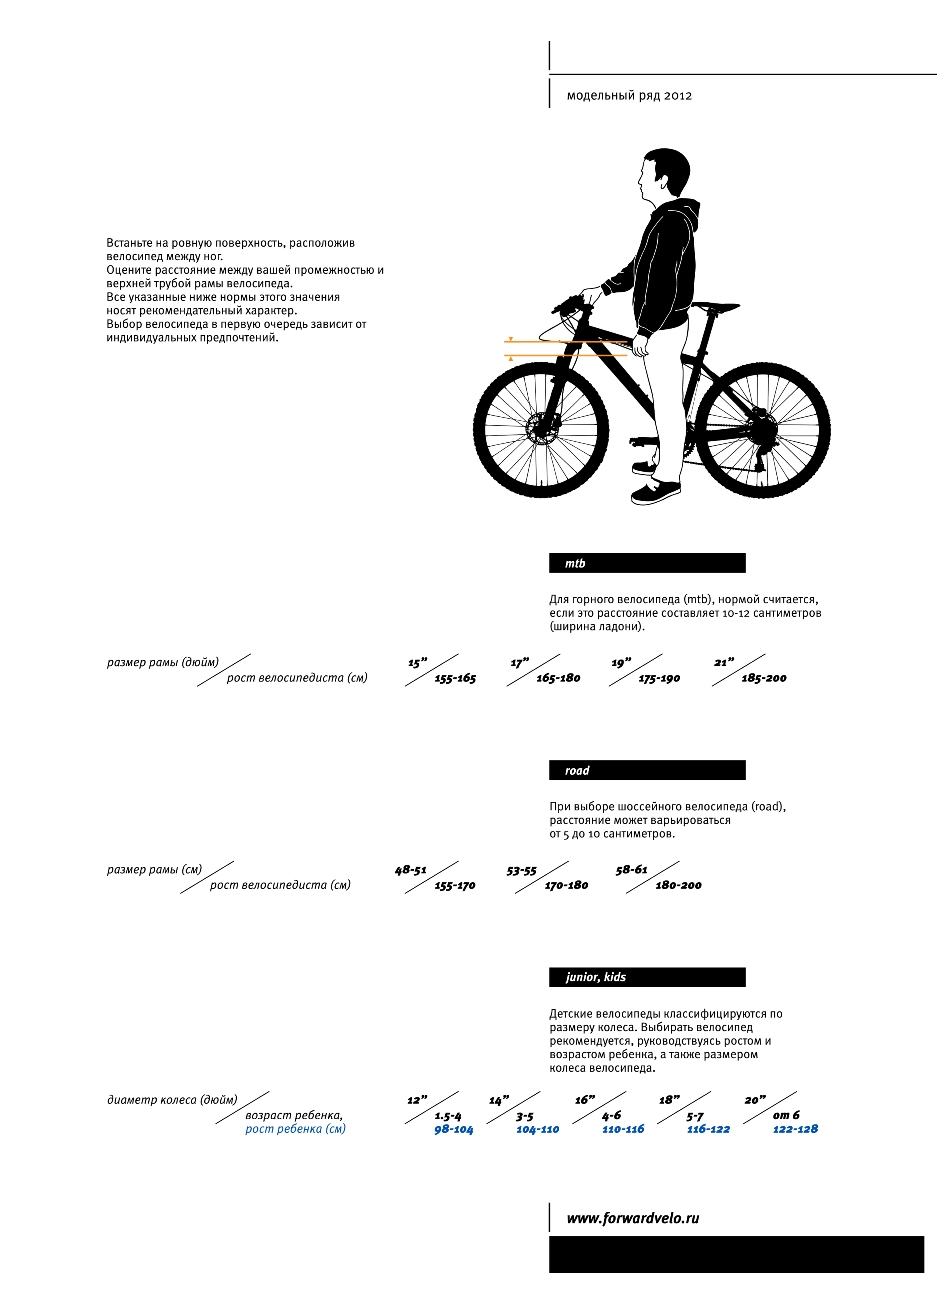 Как выбрать раму велосипеда по росту. Размер рамы велосипеда по росту женщина. Таблица выбора велосипеда по росту и весу. Какой размер рамы выбрать для велосипеда рост 182. Схема подбора велосипеда по росту таблица.